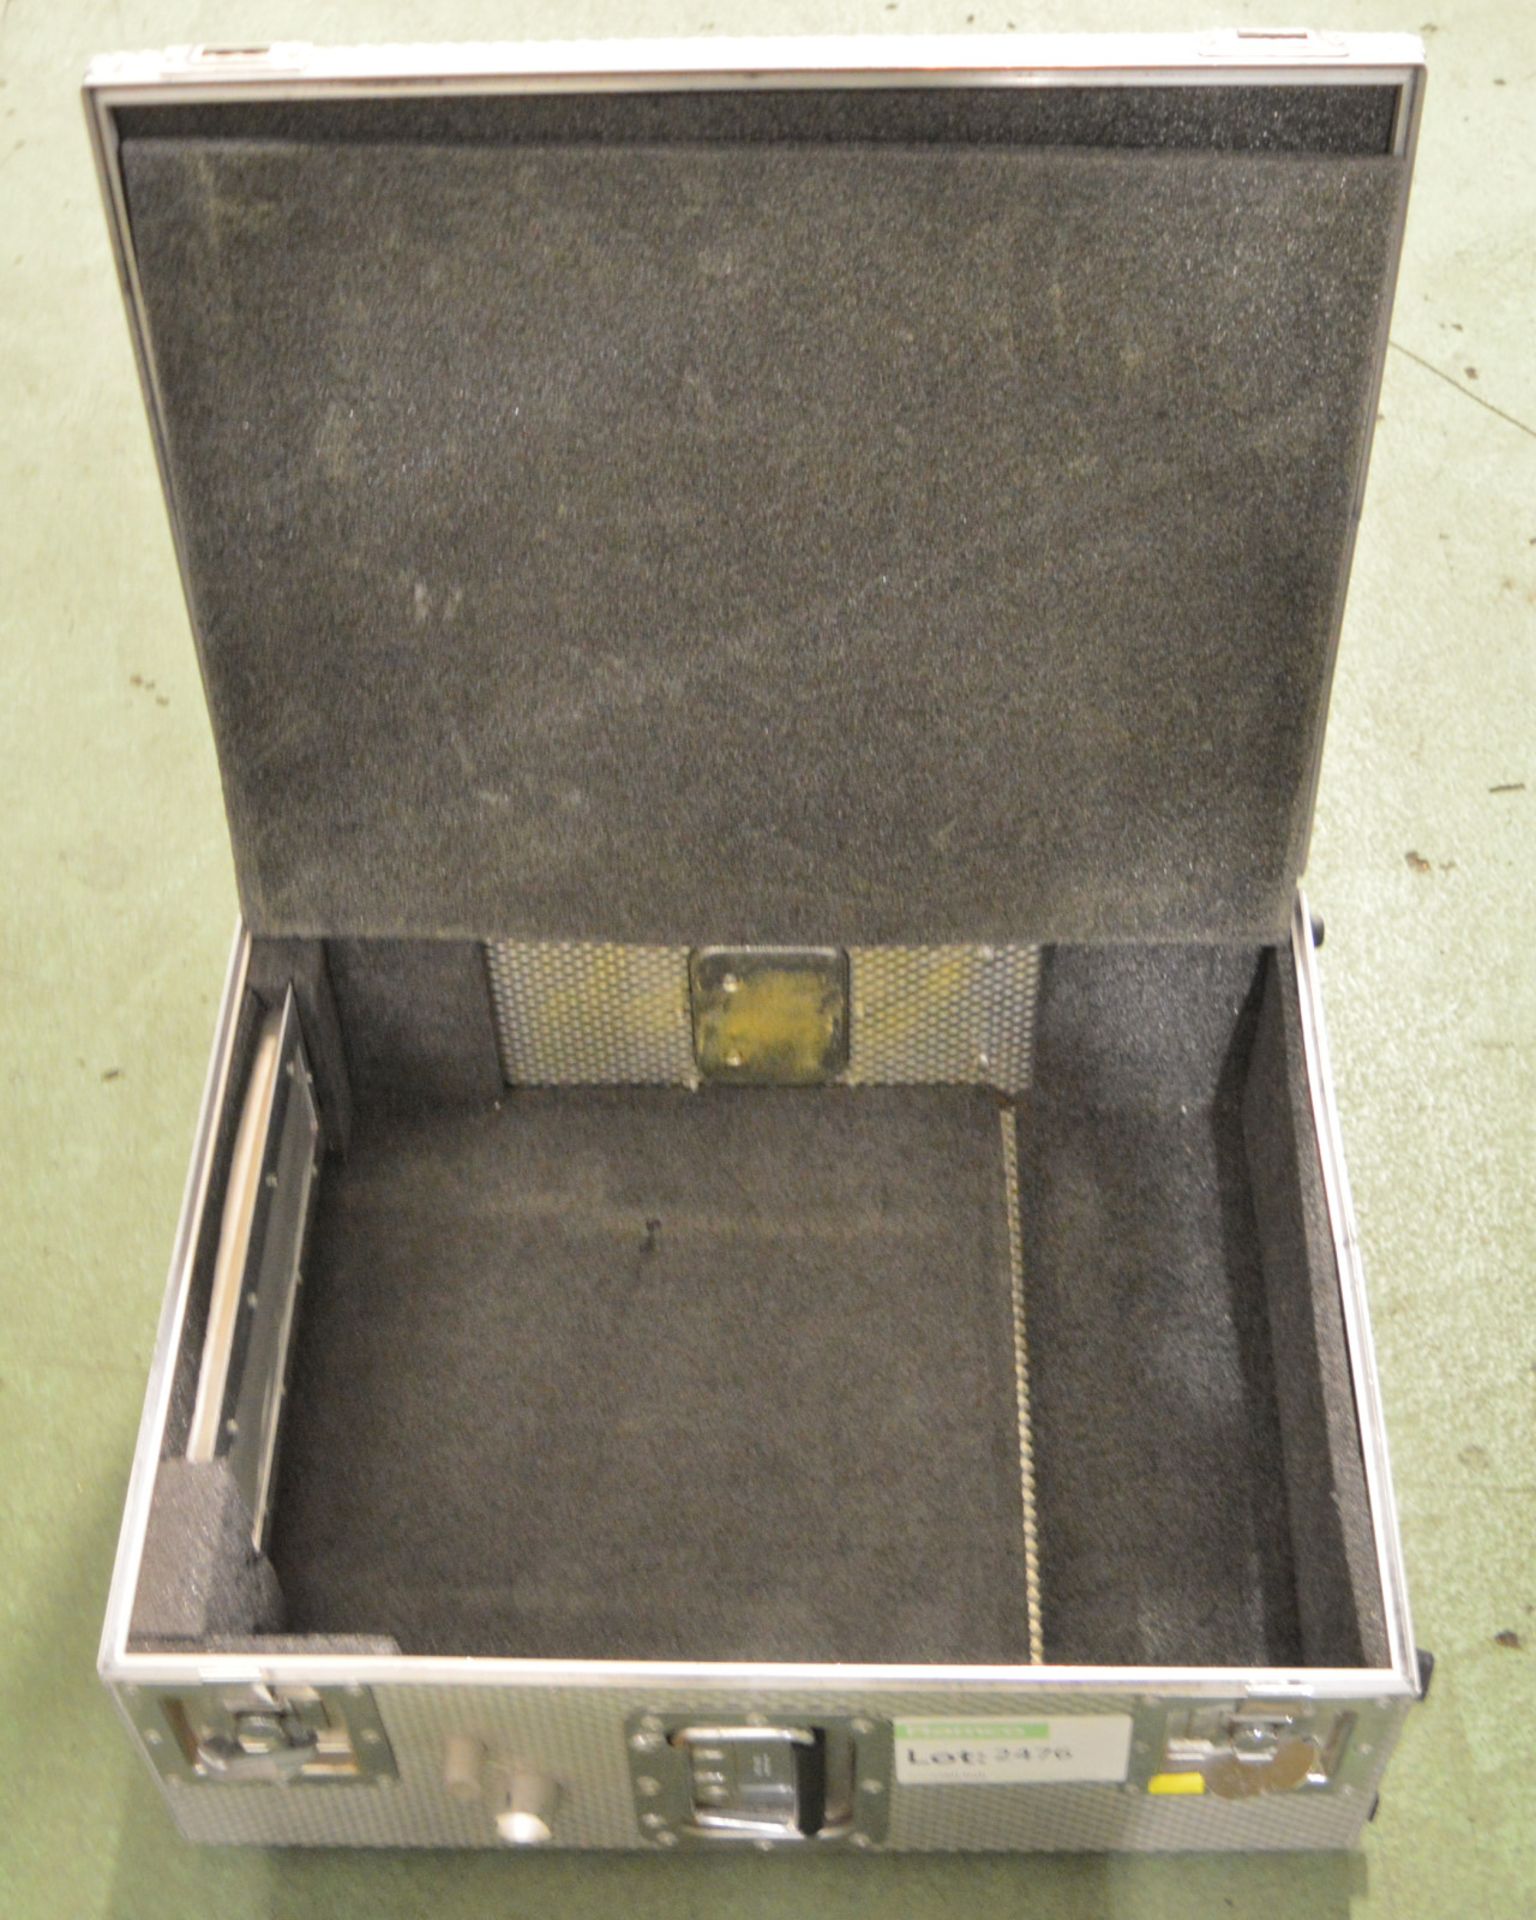 Aluminium Carry Case 550mm x 450mm x 210mm. - Image 2 of 2